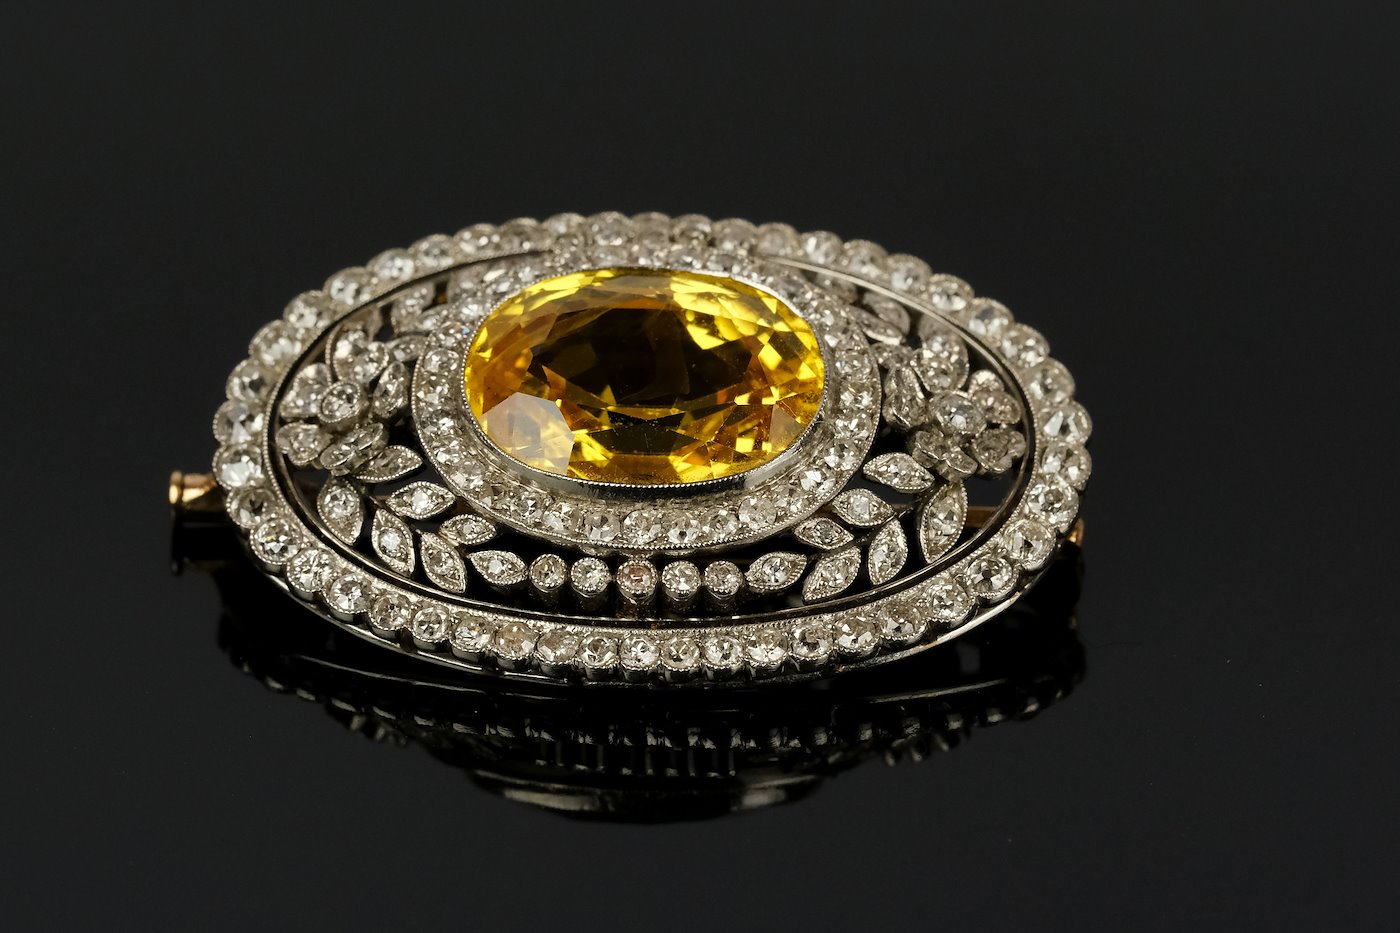 .. - Platinová brož s diamanty a žlutým korundem, platina 900/1000, uzávěr 585/1000, hrubá hmotnost celkem 14,80 g ; 